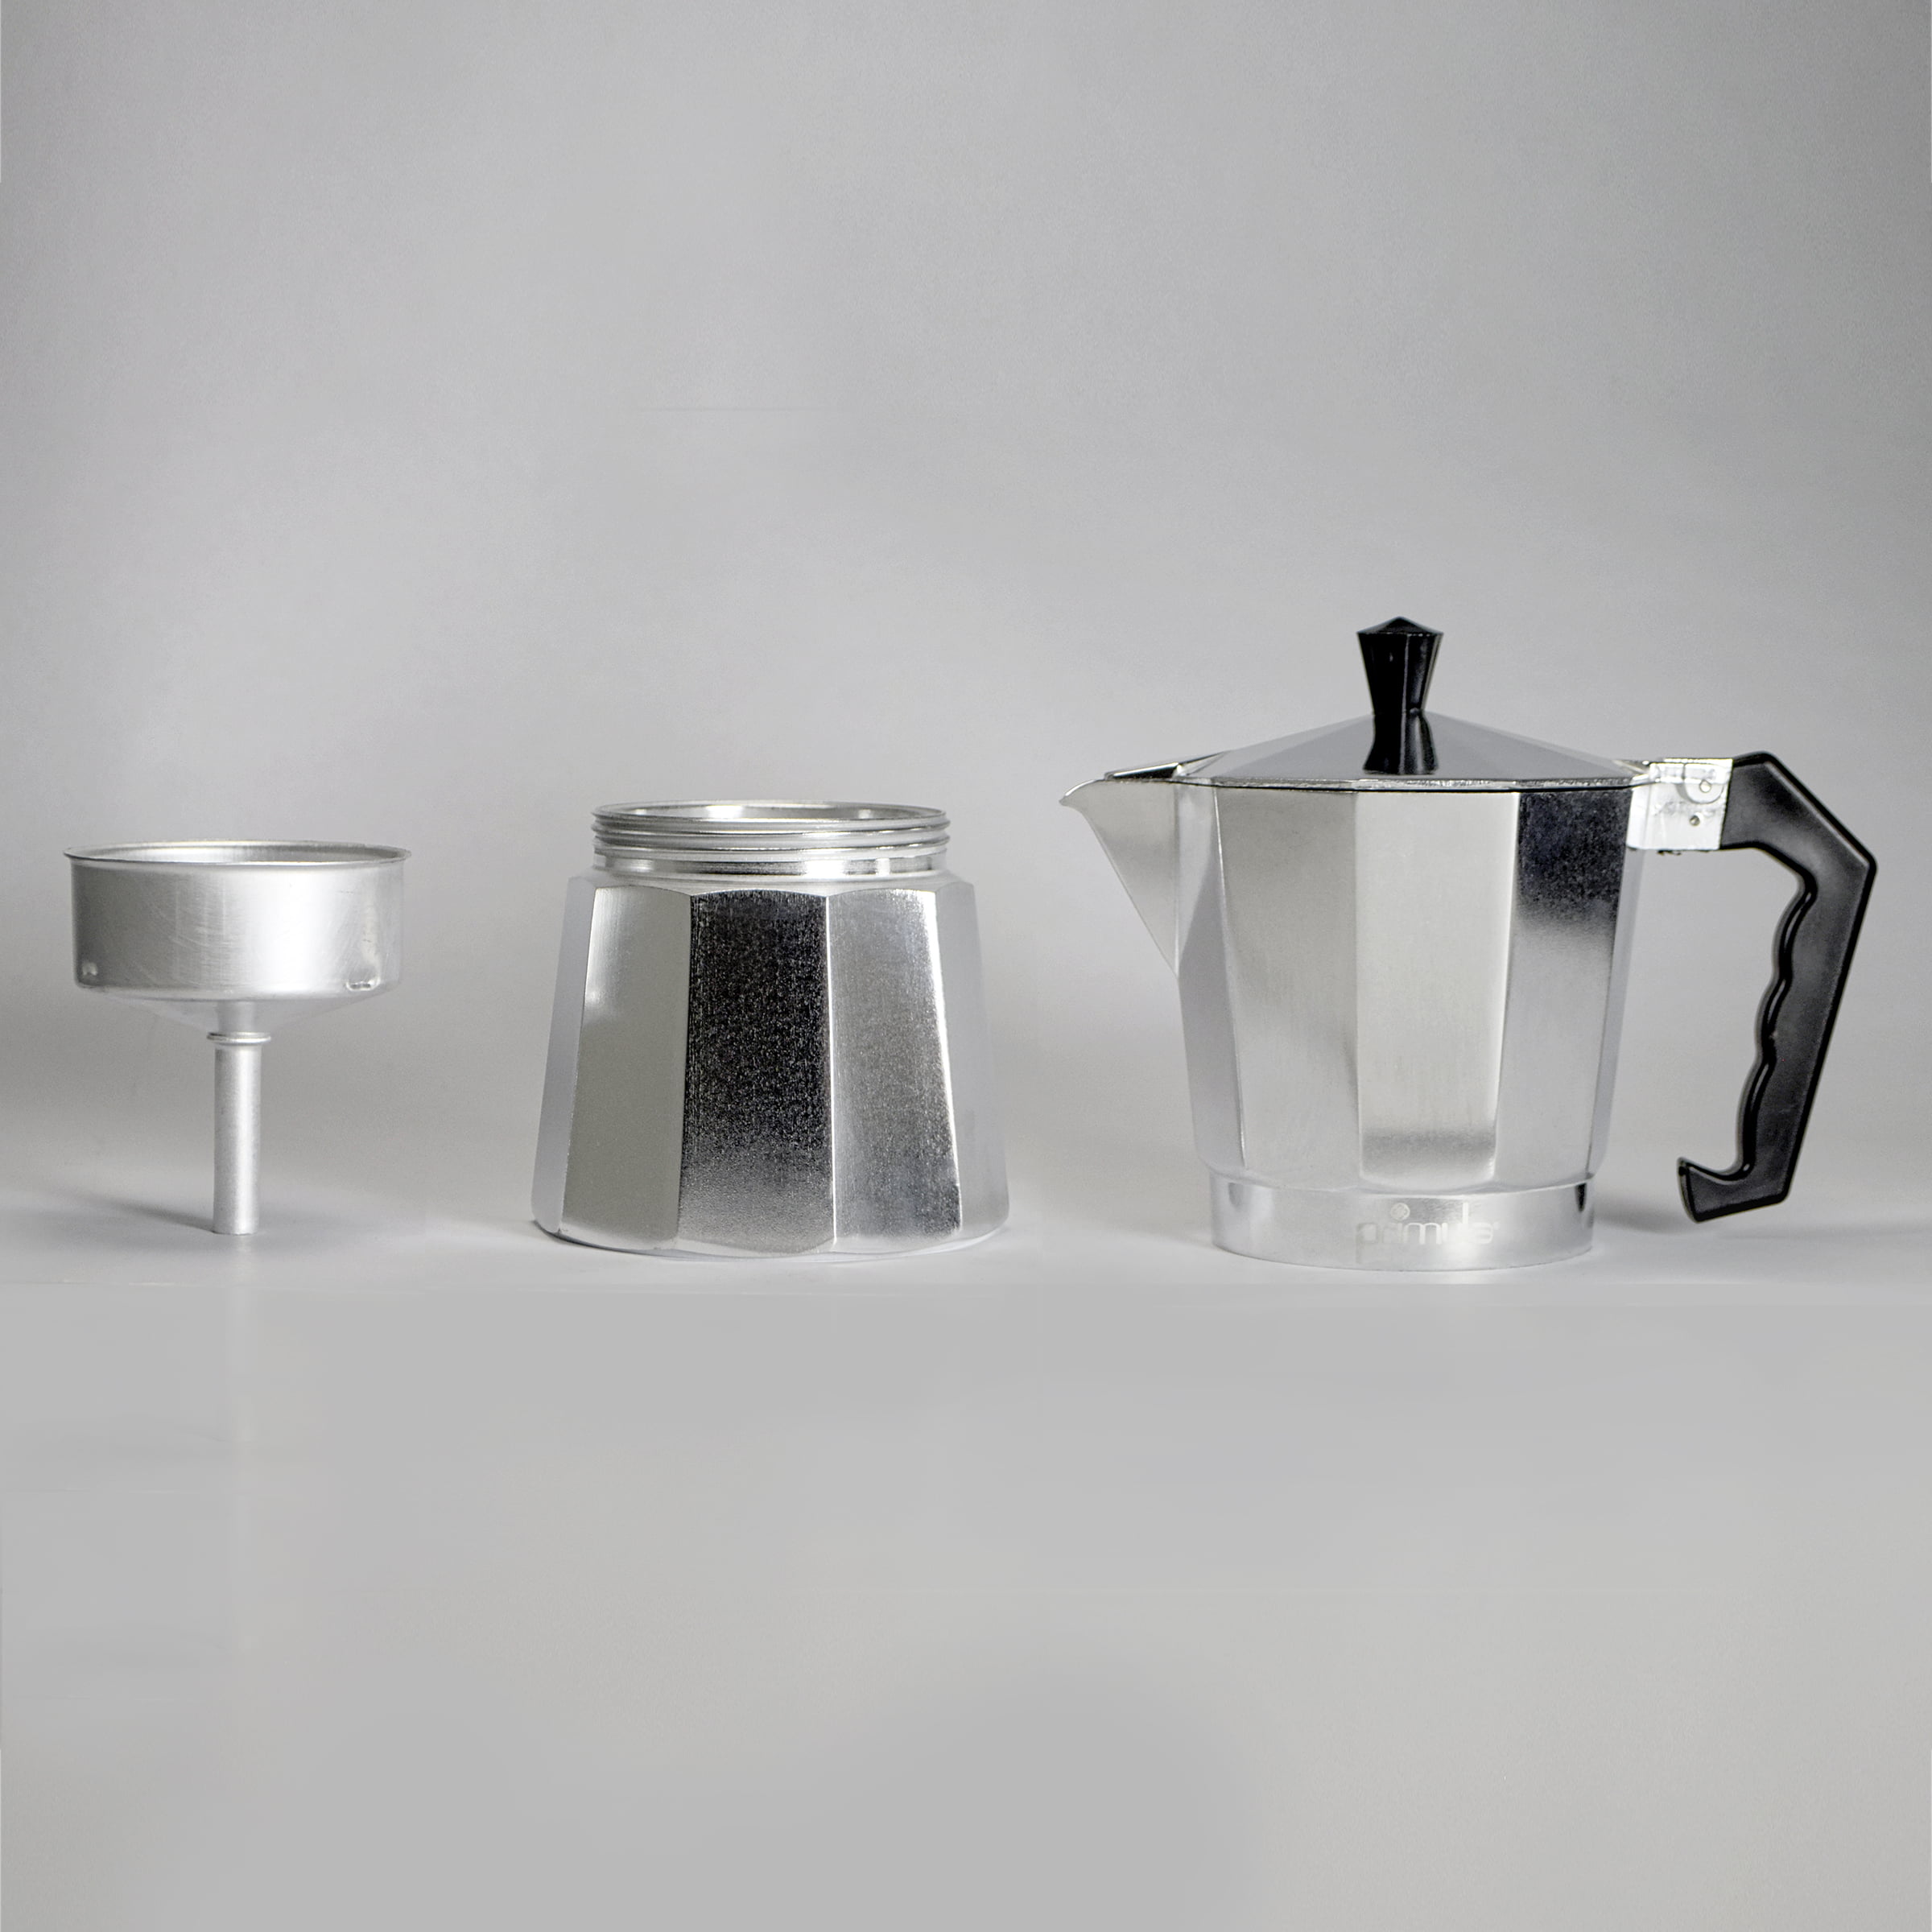 Primula 9-Cup Stovetop Espresso Coffee Maker Pot